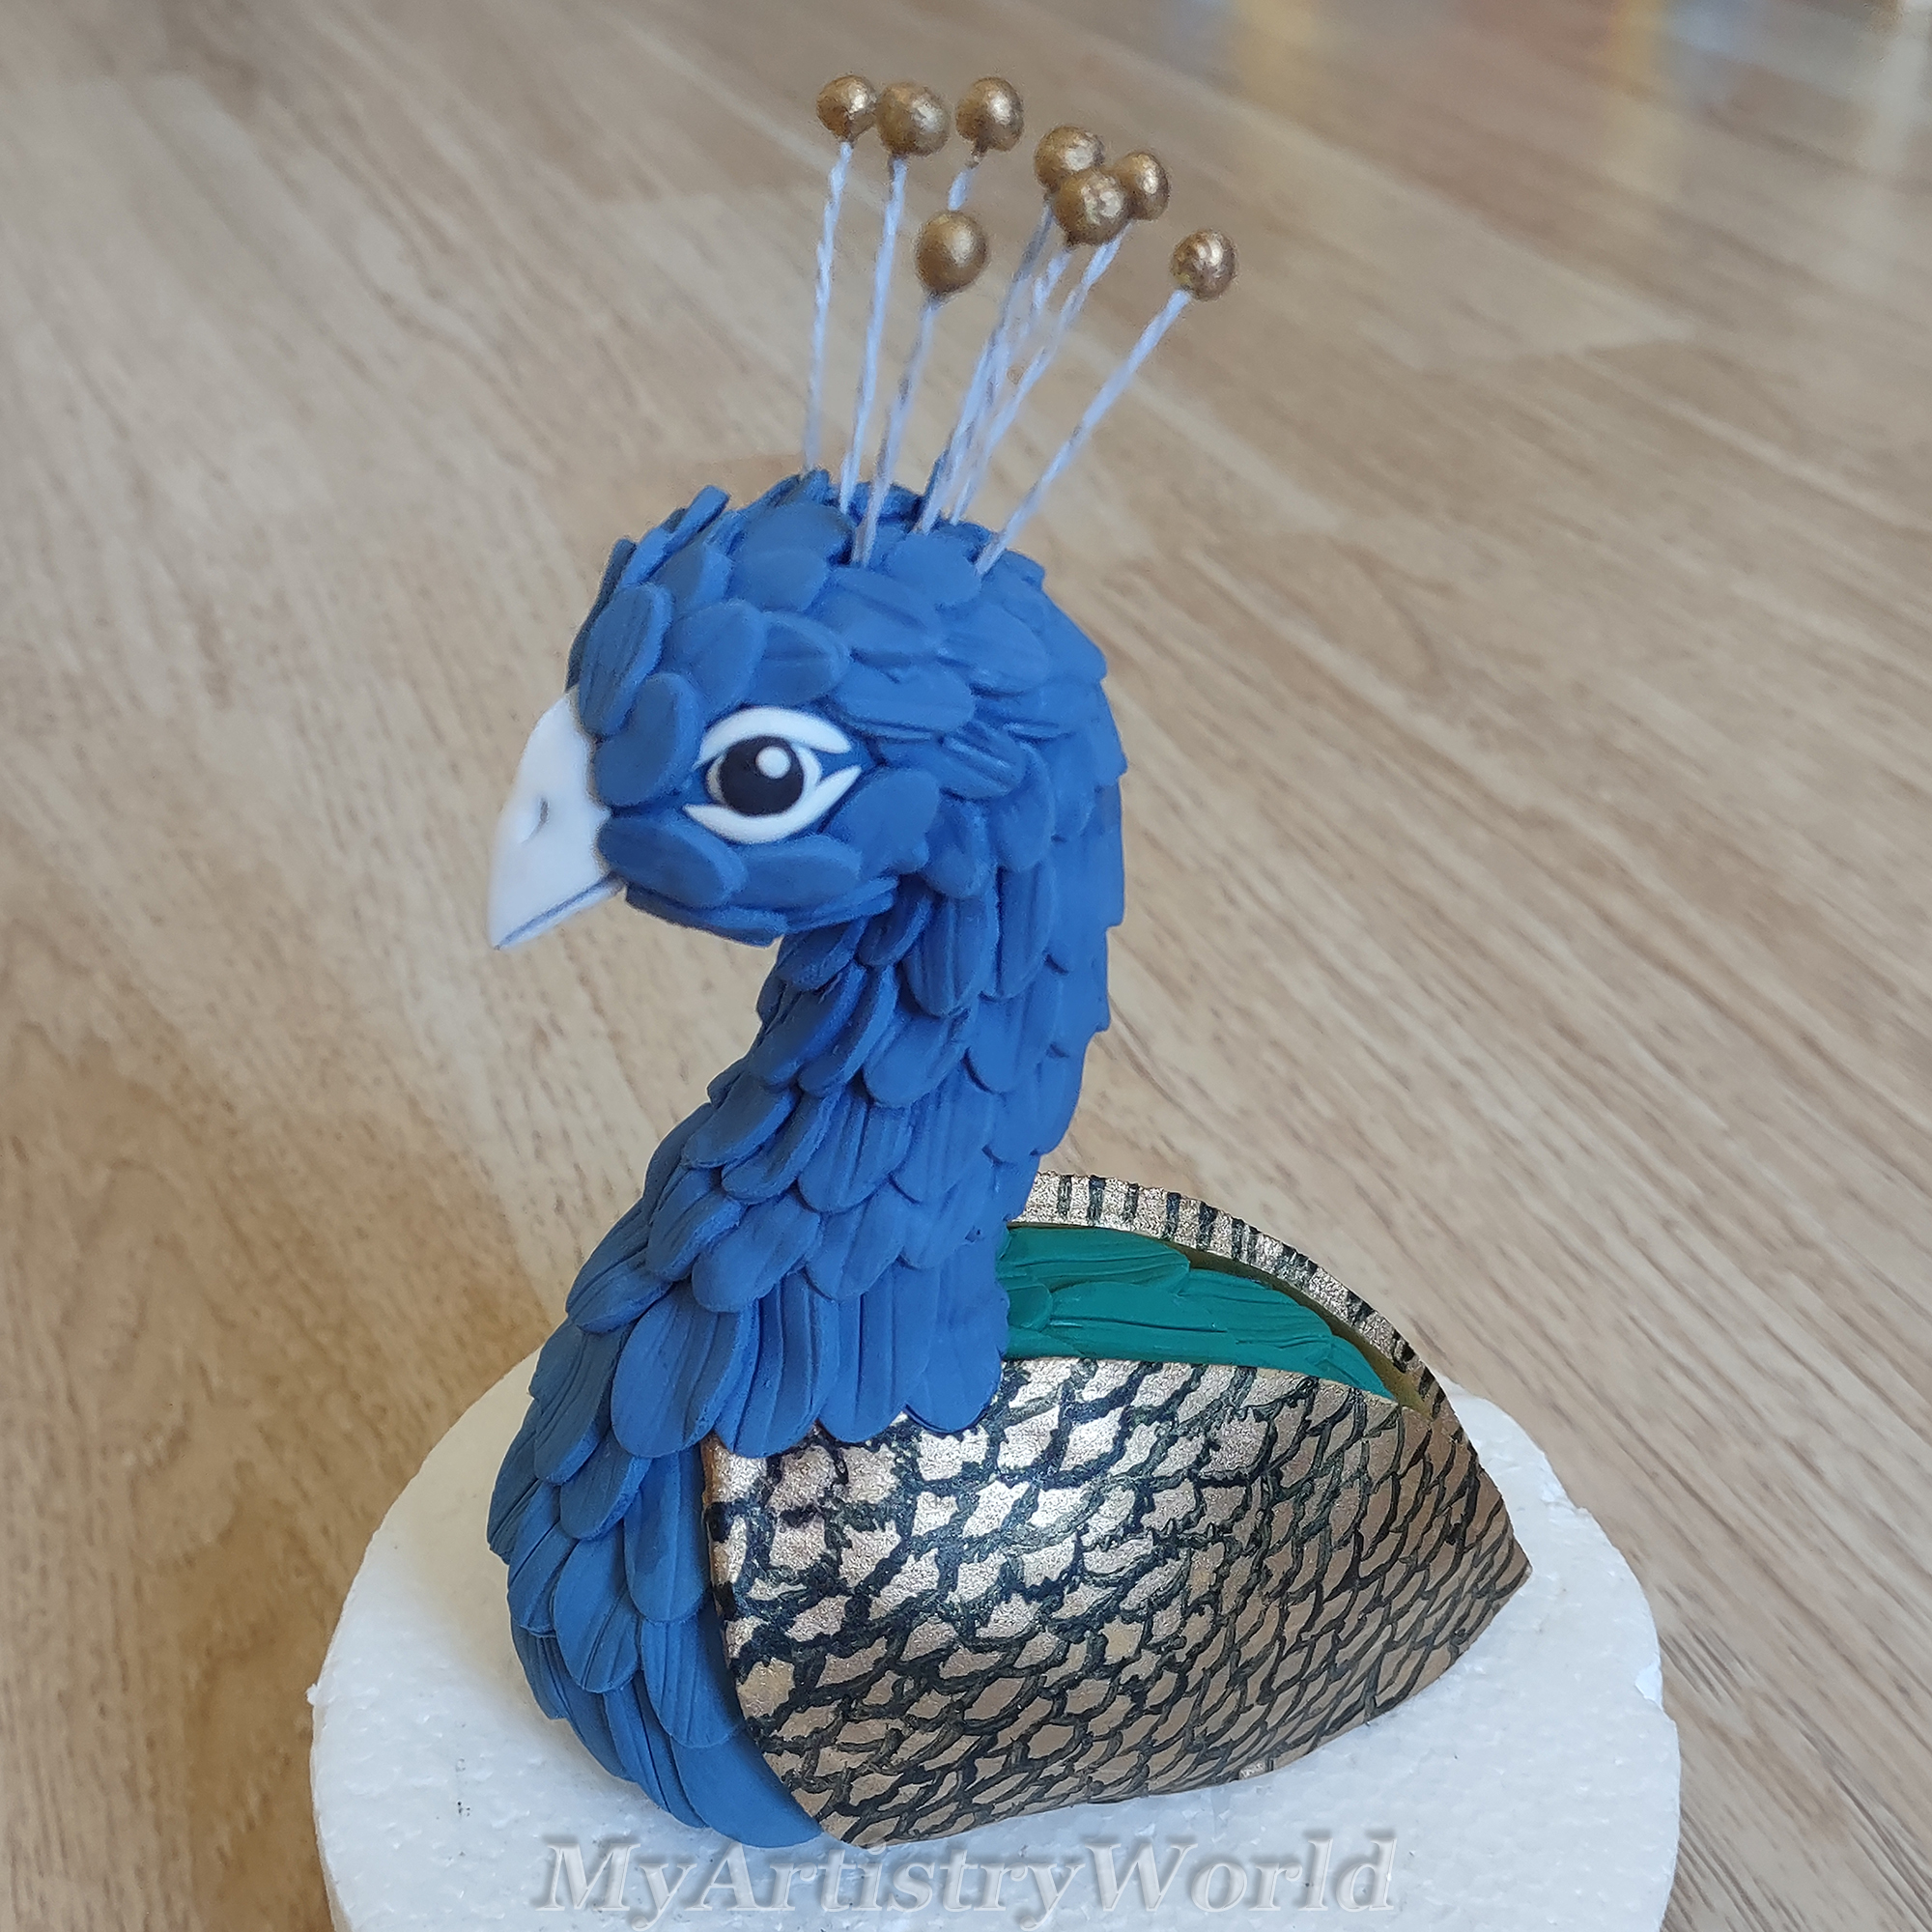 Peacock cake topper